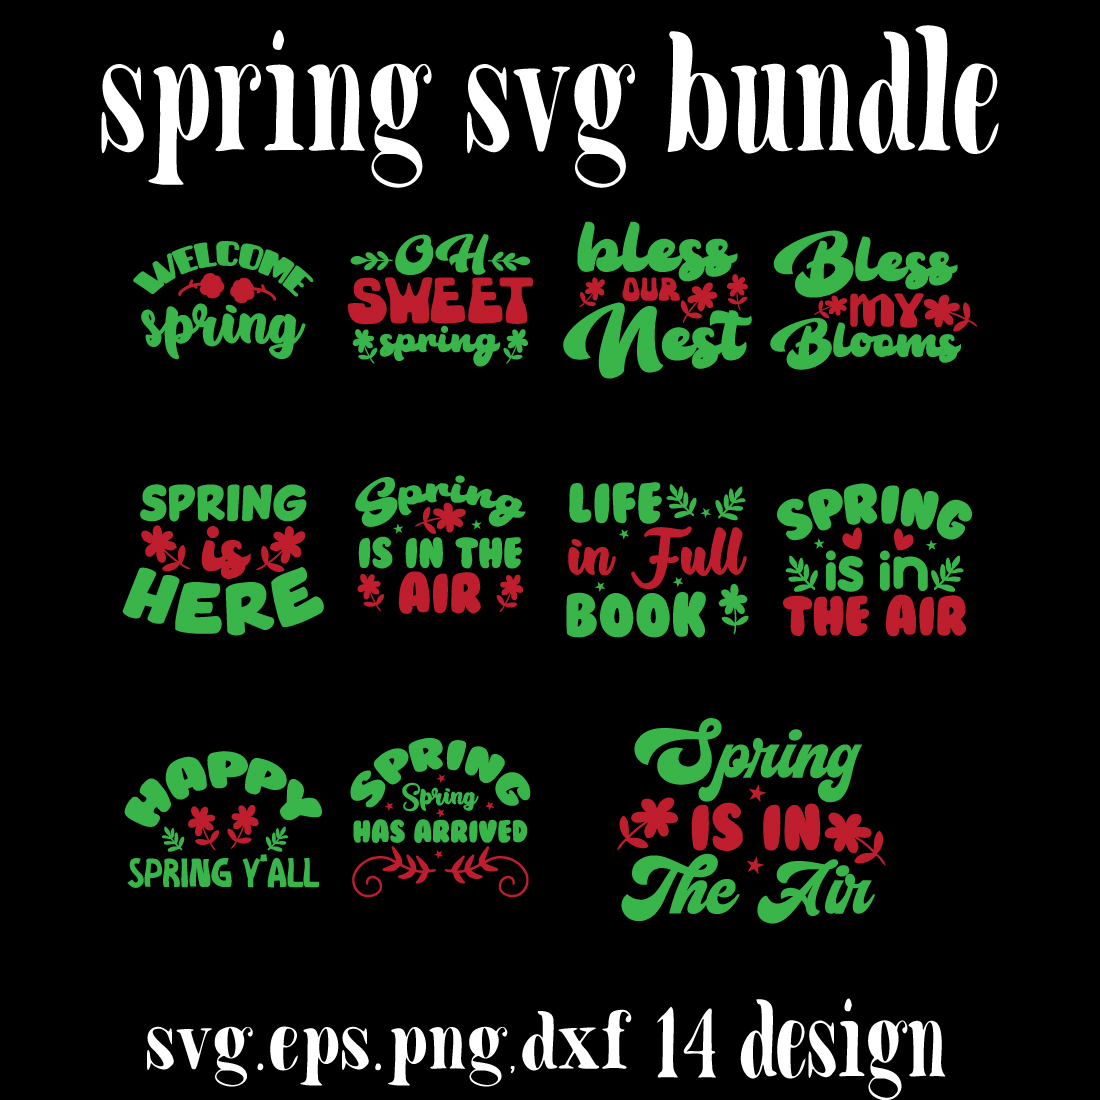 spring svg bundle preview image.